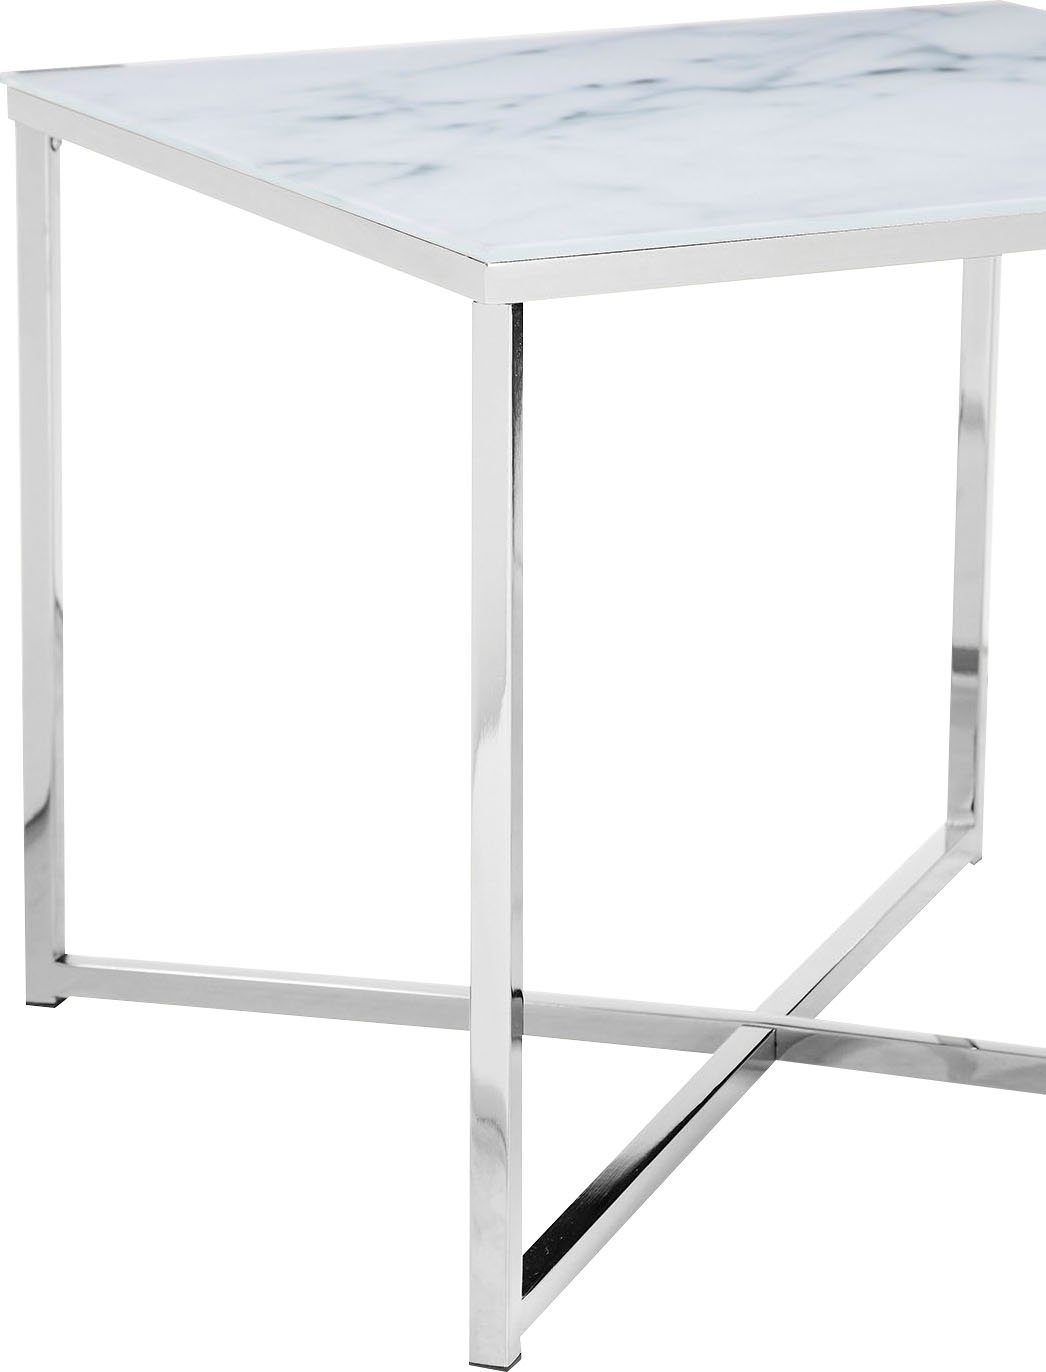 | Chromfarben Weiß/Chromfarben Beistelltisch, Marmoroptik in Tischplatte SalesFever Weiß |